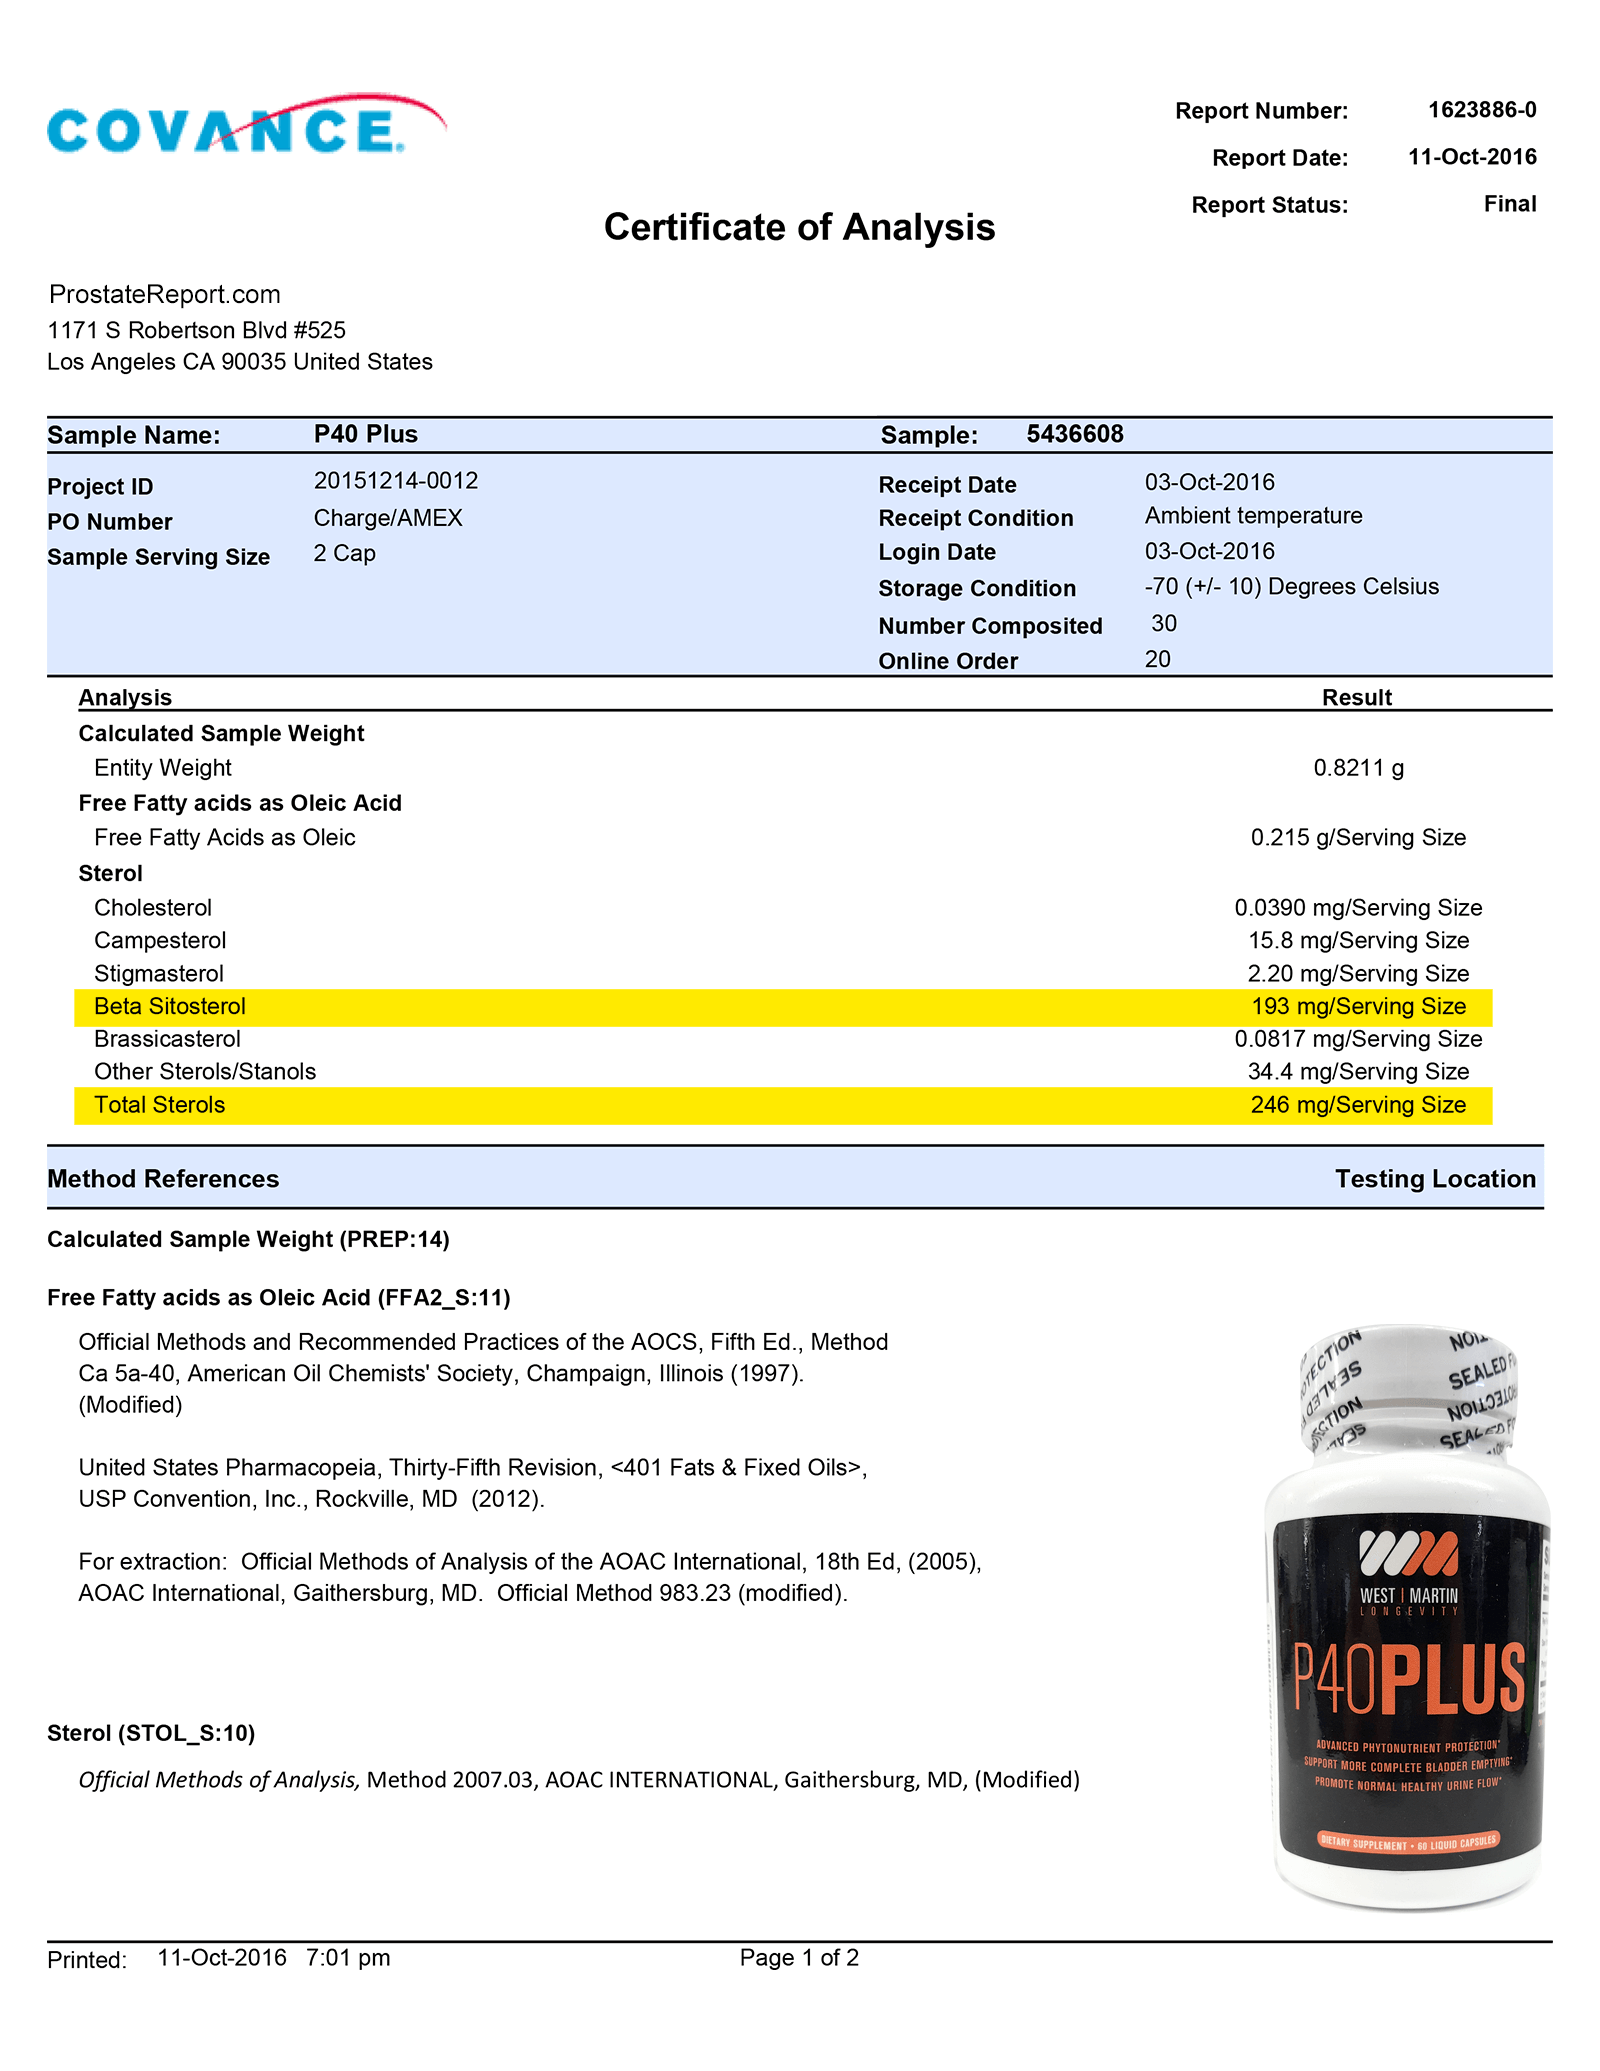 P40 Plus lab report 